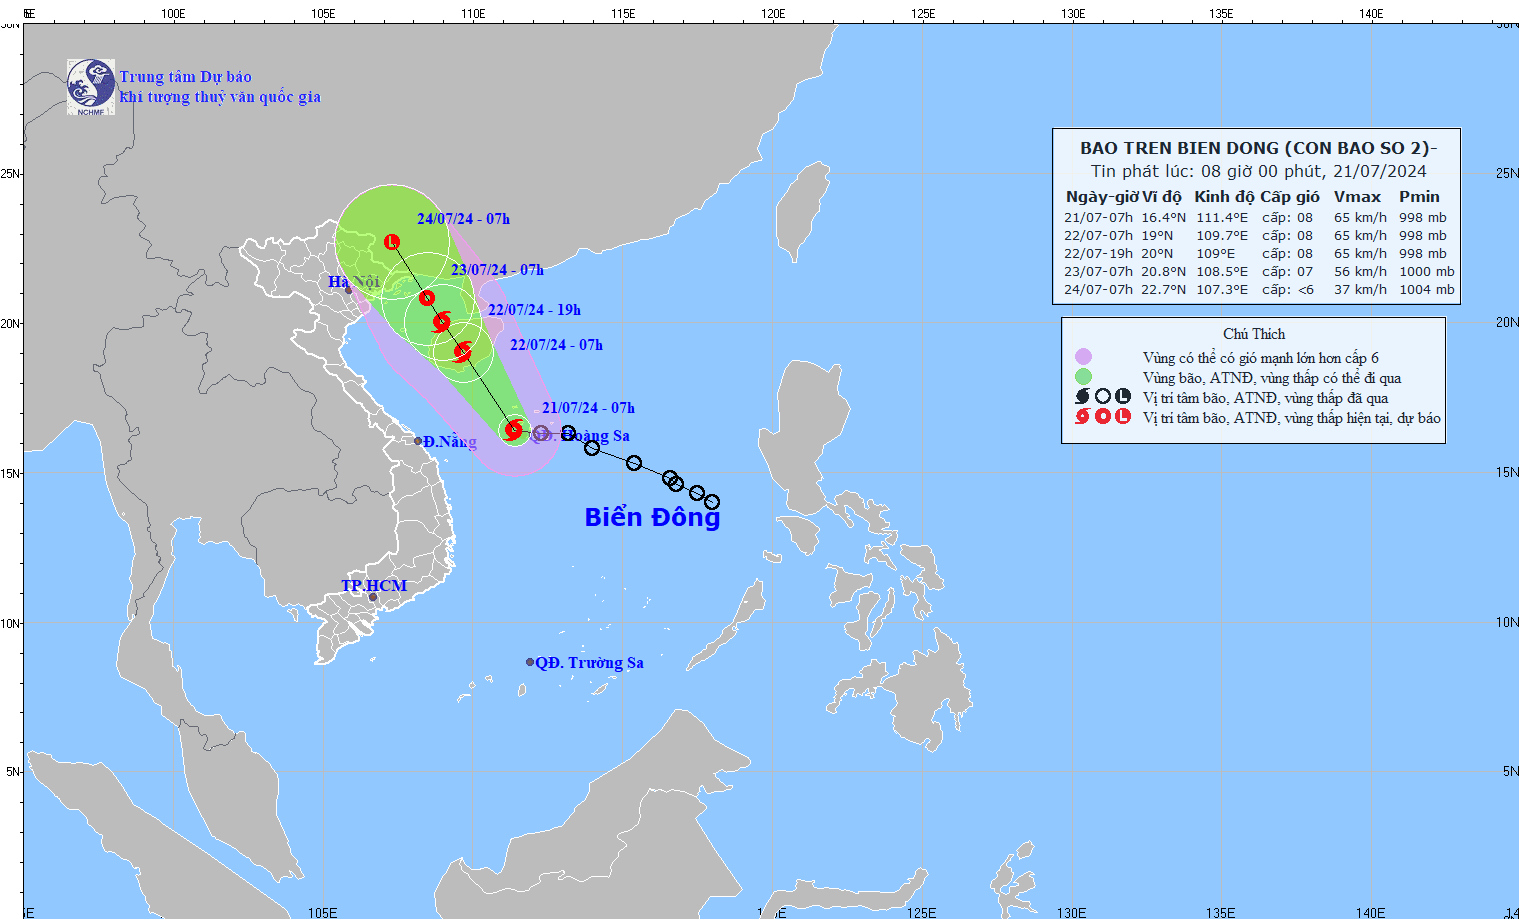 Dự báo bão số 2: Vùng biển phía Đông khu vực Quảng Trị đến Quảng Ngãi có gió vùng gần tâm bão cấp cấp 8, giật cấp 10, sóng cao 3-5m